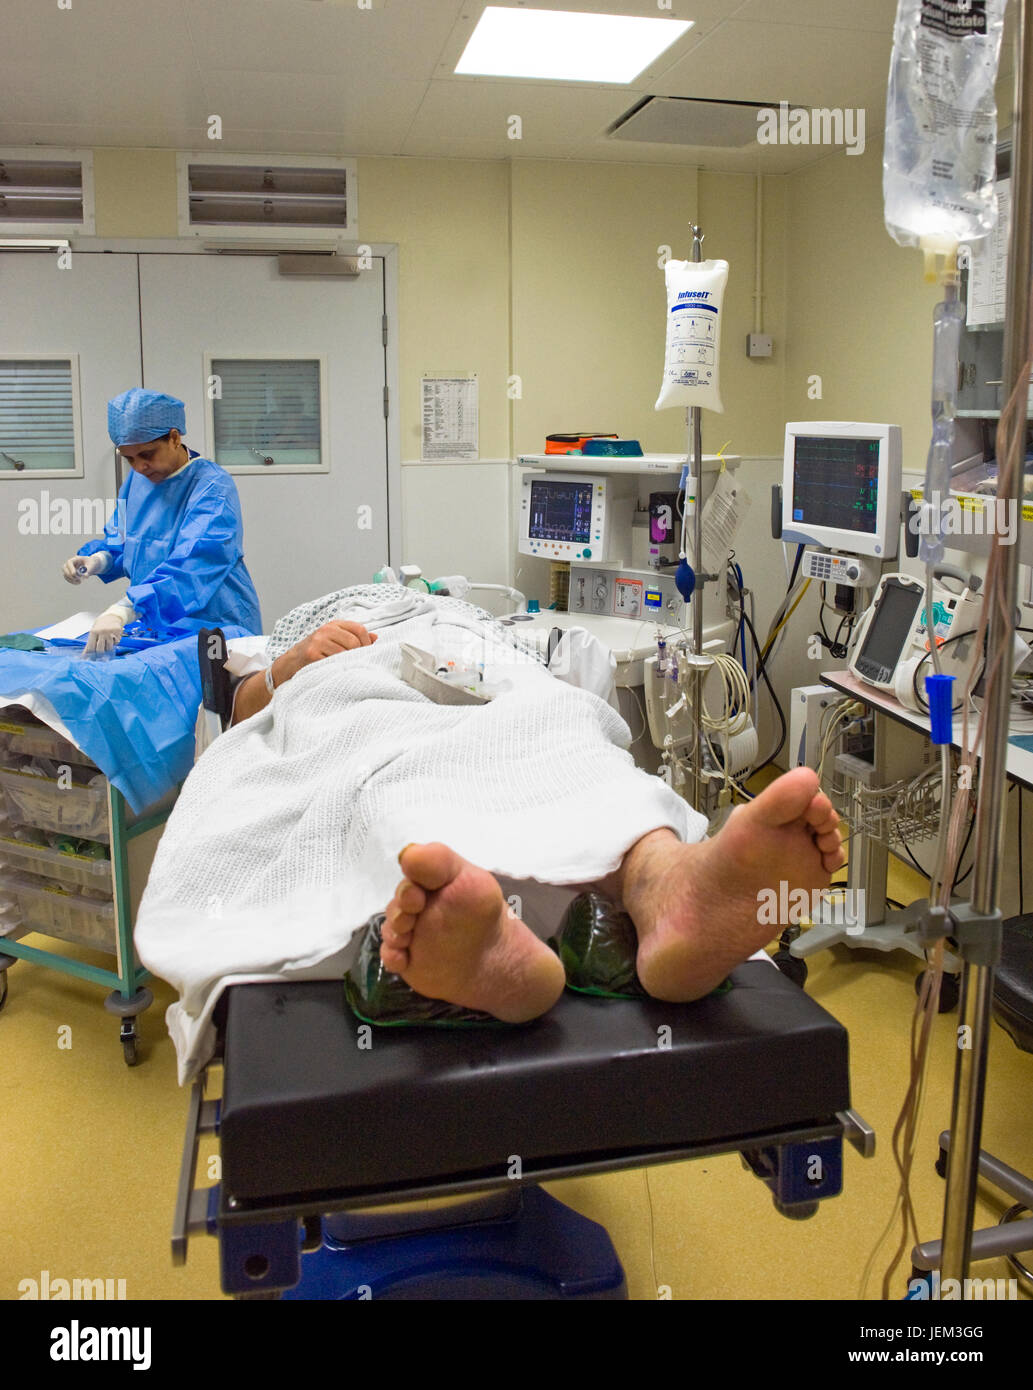 Ein Patient liegt auf einem Wagen in Narkose Vorzimmer des Krankenhaus-OP-Saal. Stockfoto